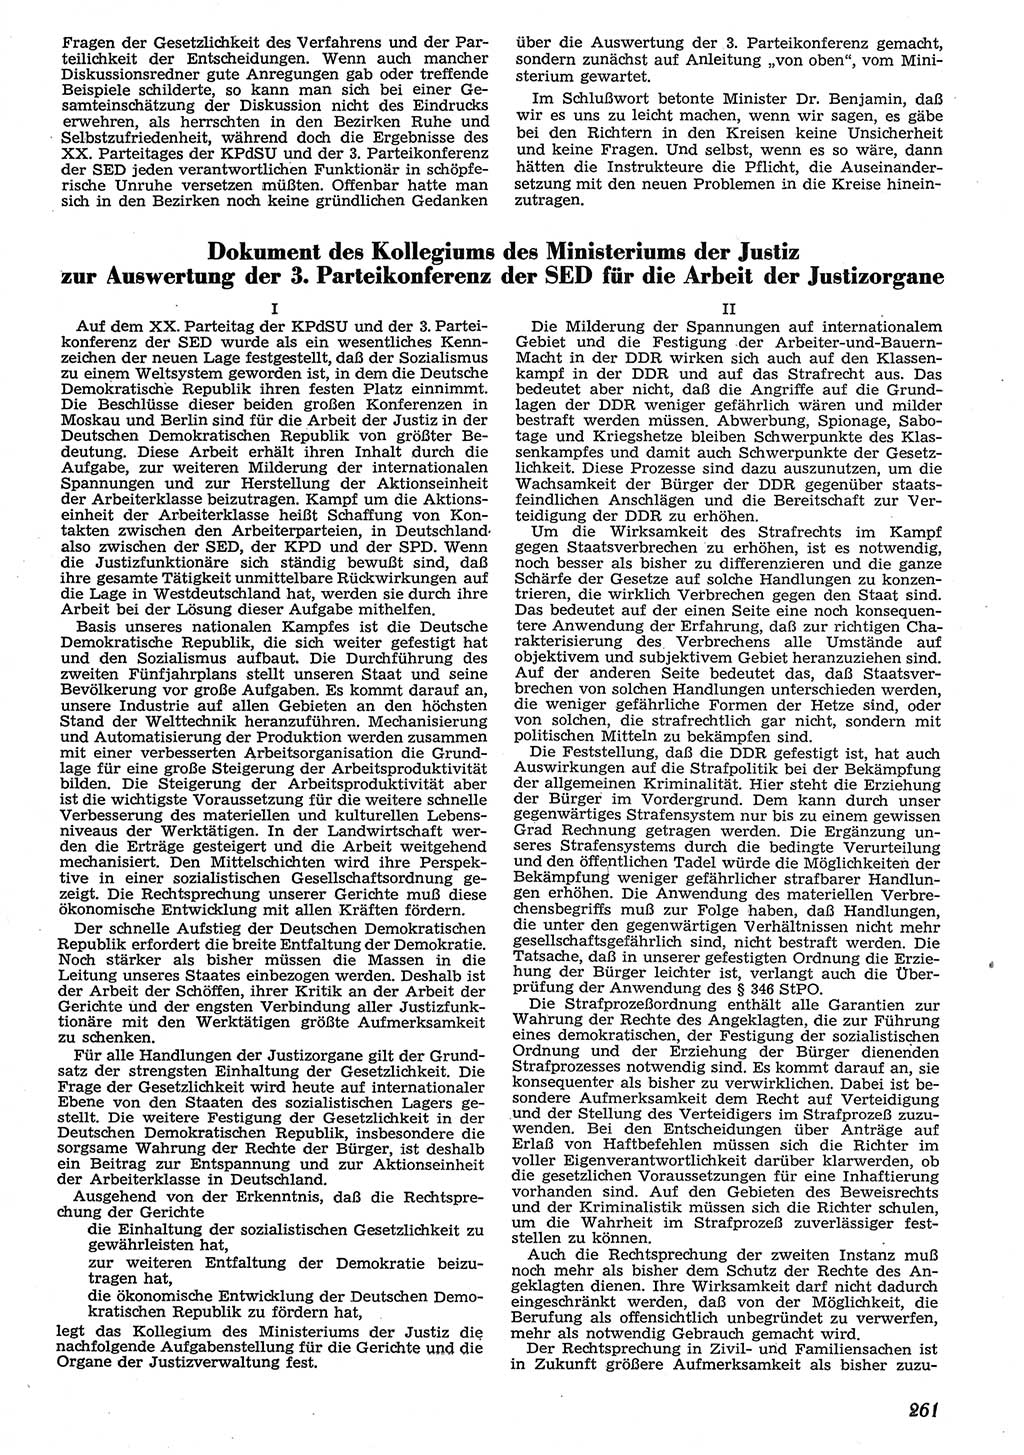 Neue Justiz (NJ), Zeitschrift für Recht und Rechtswissenschaft [Deutsche Demokratische Republik (DDR)], 10. Jahrgang 1956, Seite 261 (NJ DDR 1956, S. 261)